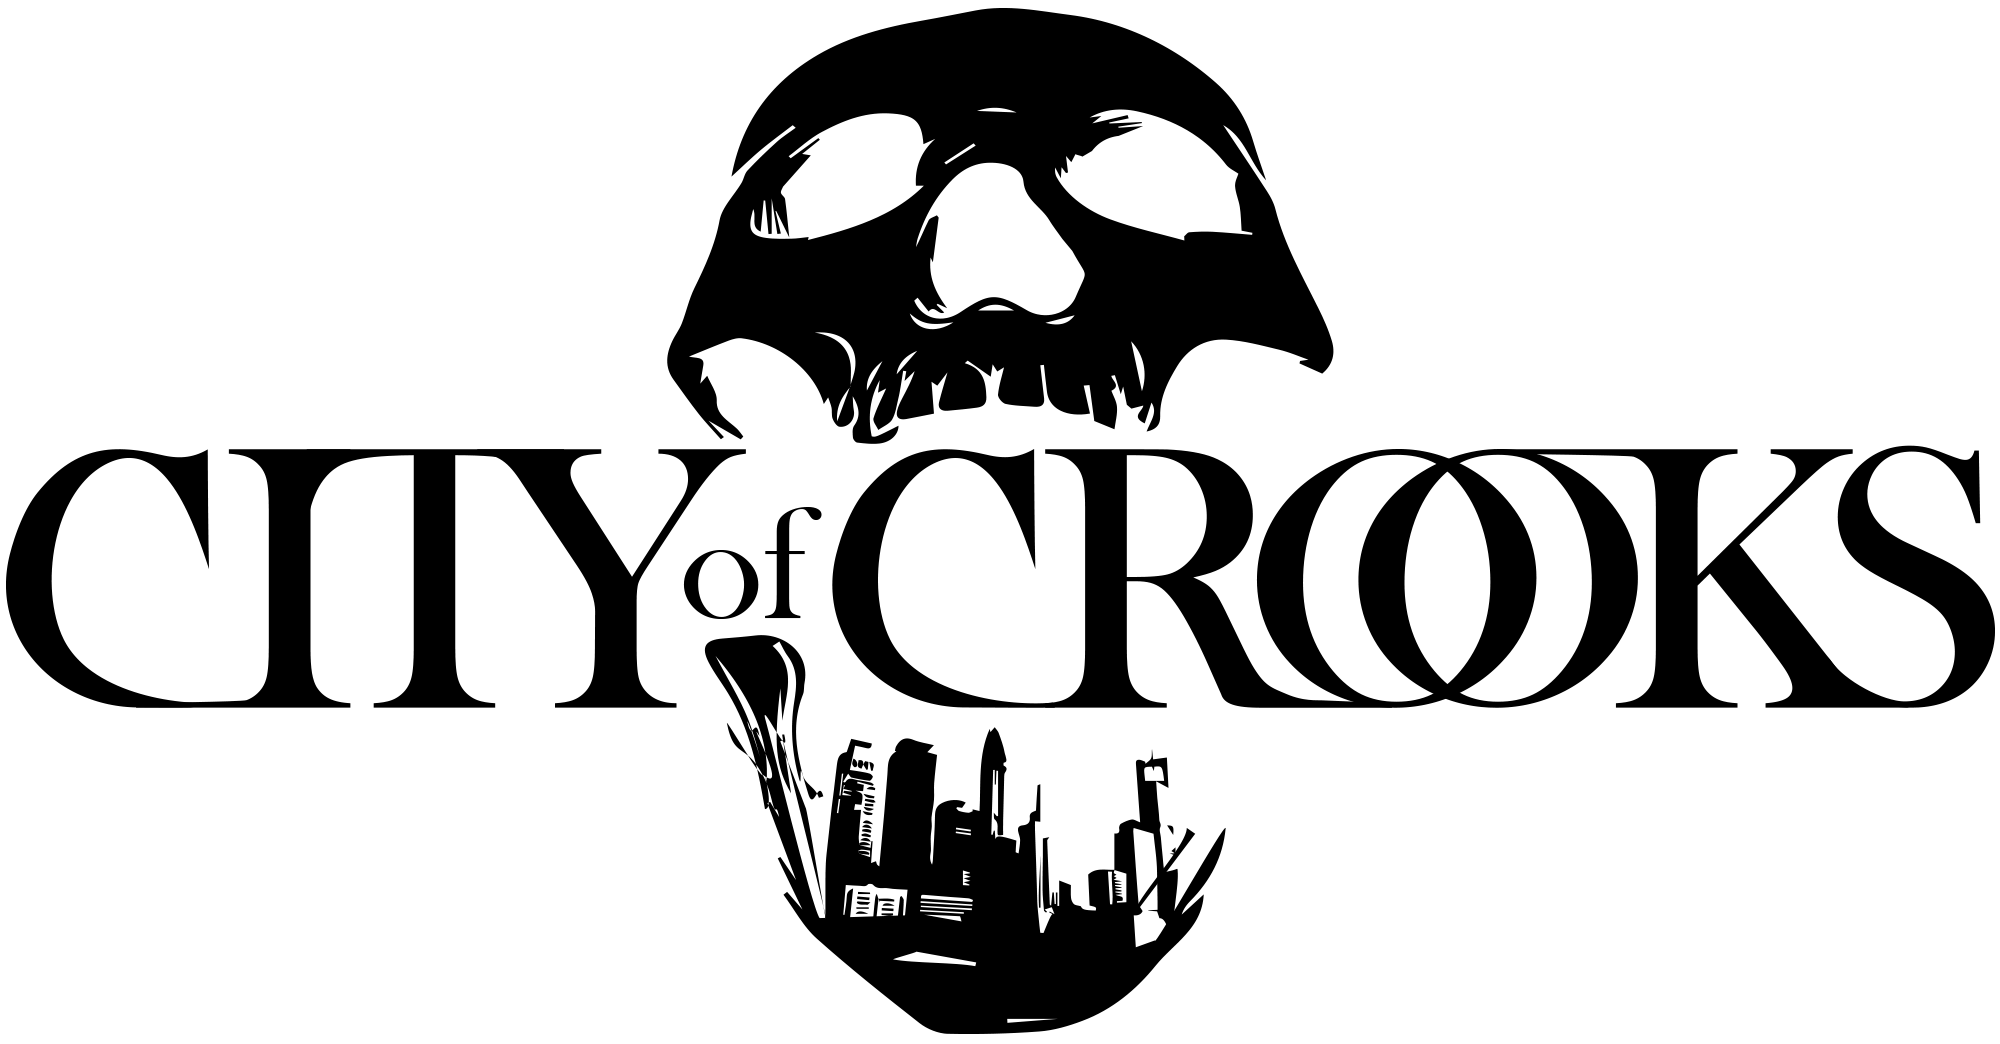 Crooks Logo - Skull Logo Shirt. City of Crooks